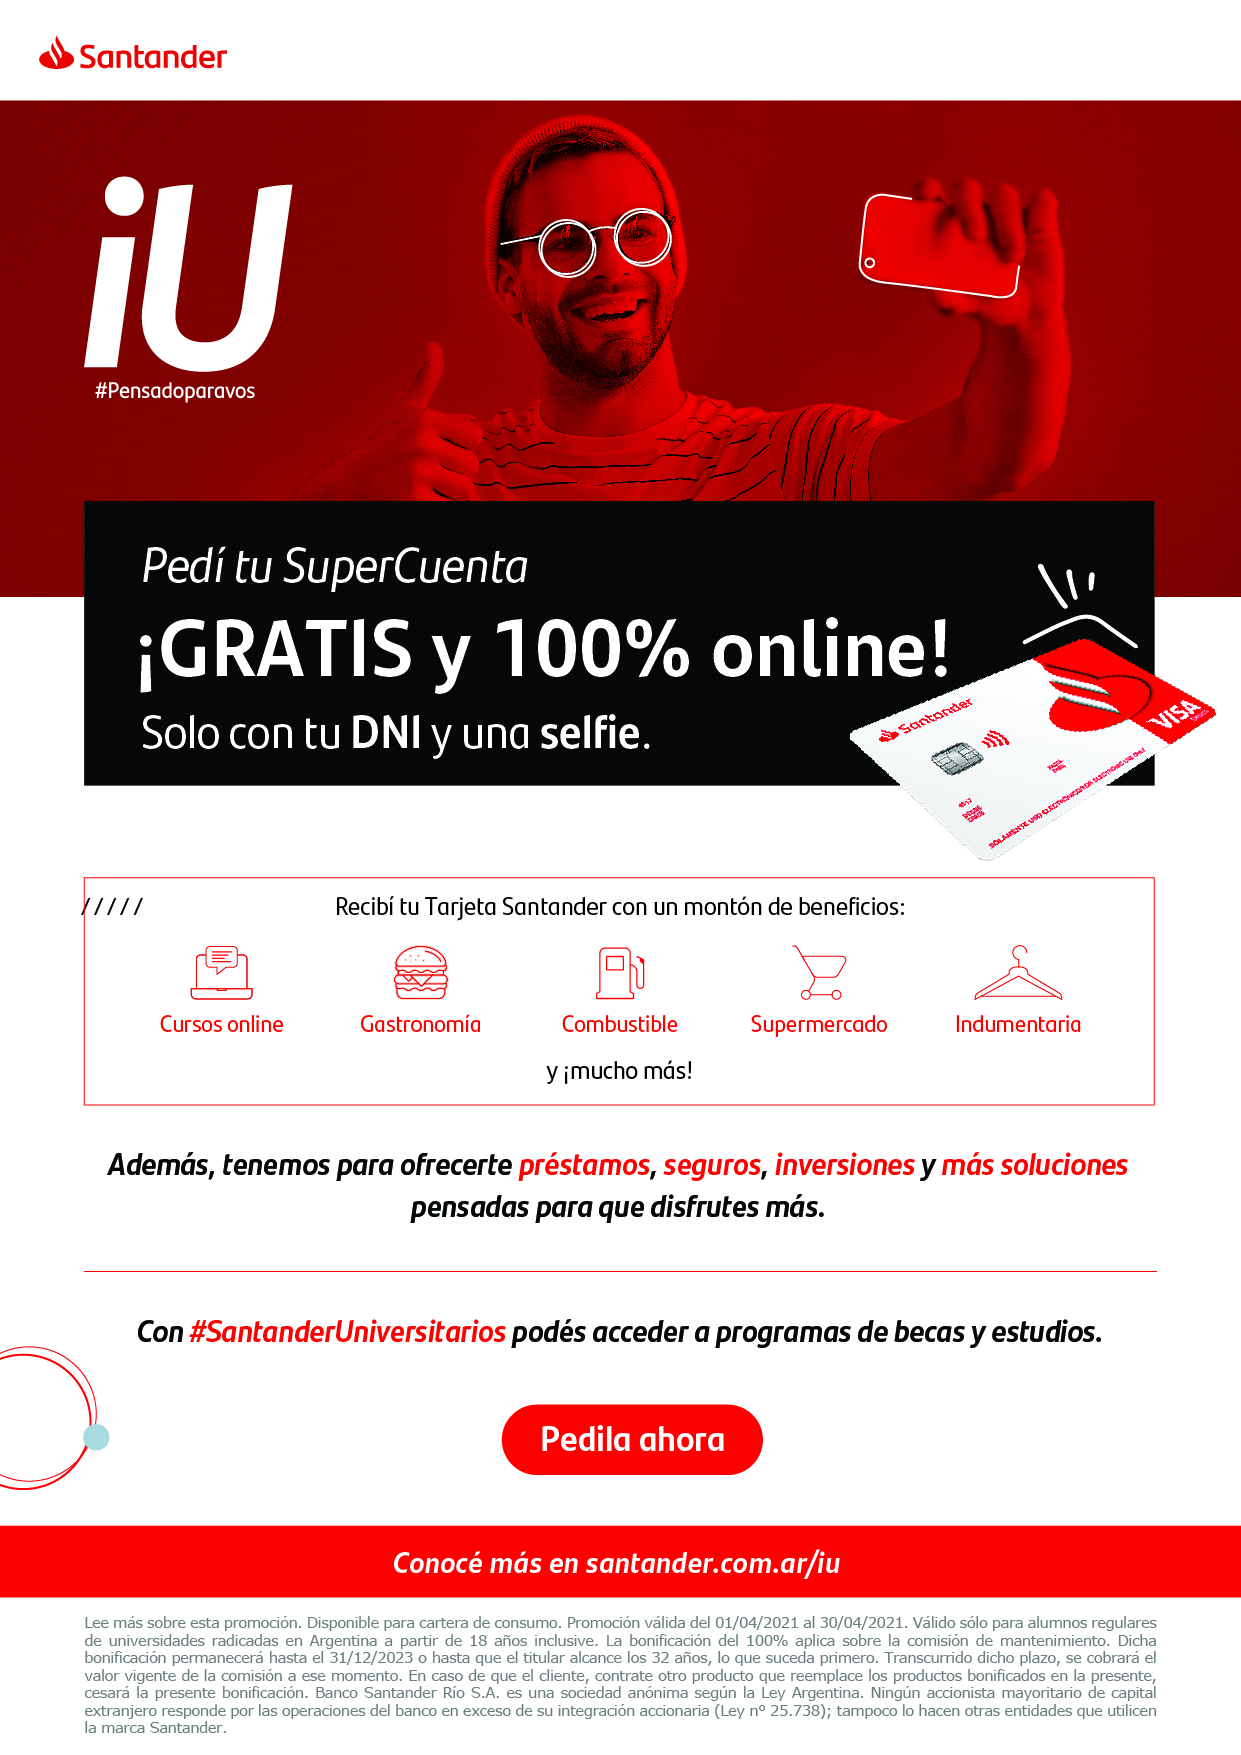 Link Cuenta Santander Universidades